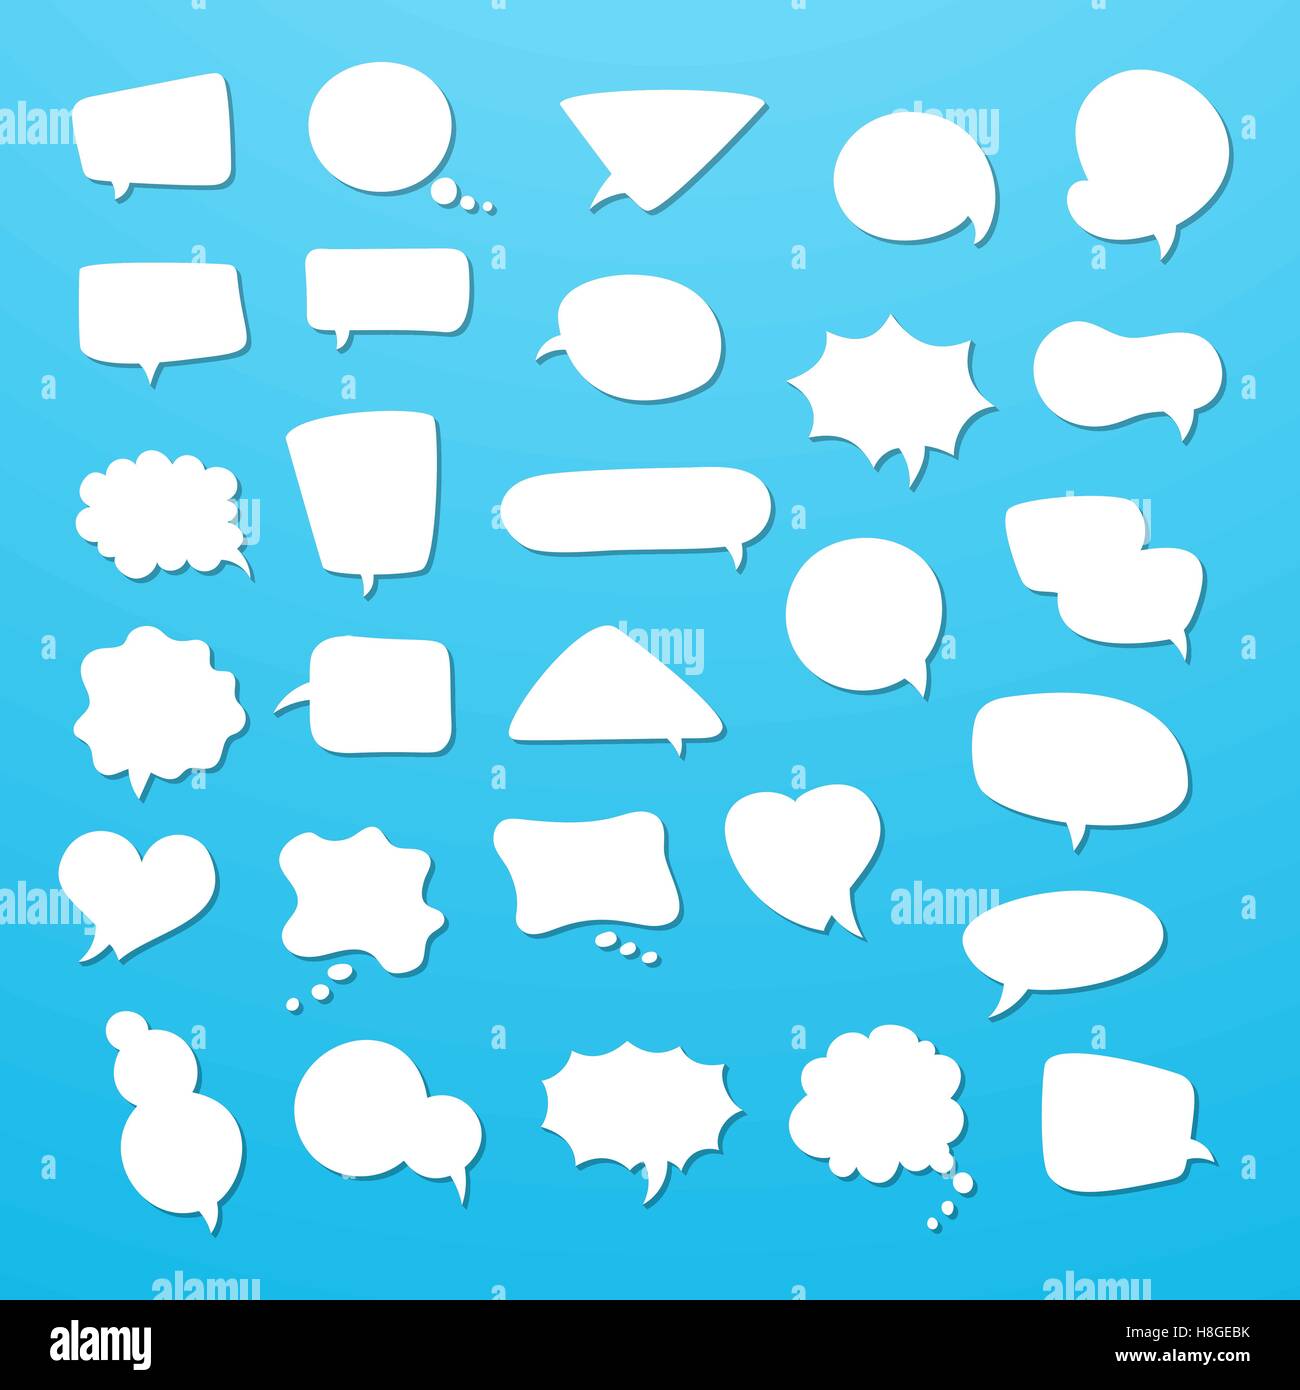 Icon Set von leere Rede sprudelt, denke Wolken. Sammlung von Comics reden Ballon Symbole. Vektor-illustration Stock Vektor